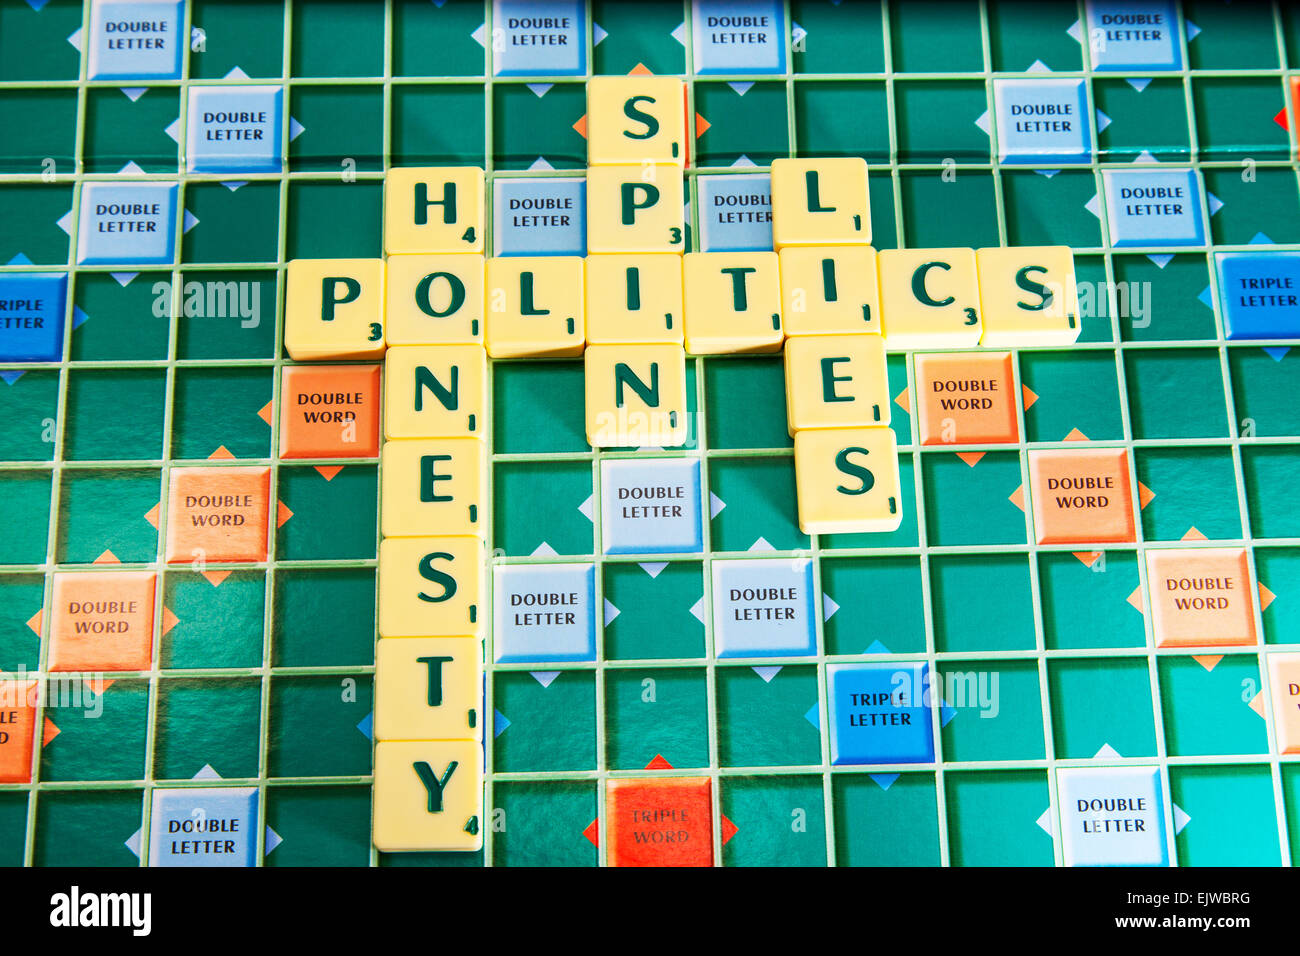 Politik-Ehrlichkeit-Spin liegt Politiker Regierung Wahlen ehrlich Lier die Wörter mit Scrabble Fliesen zu buchstabieren Stockfoto